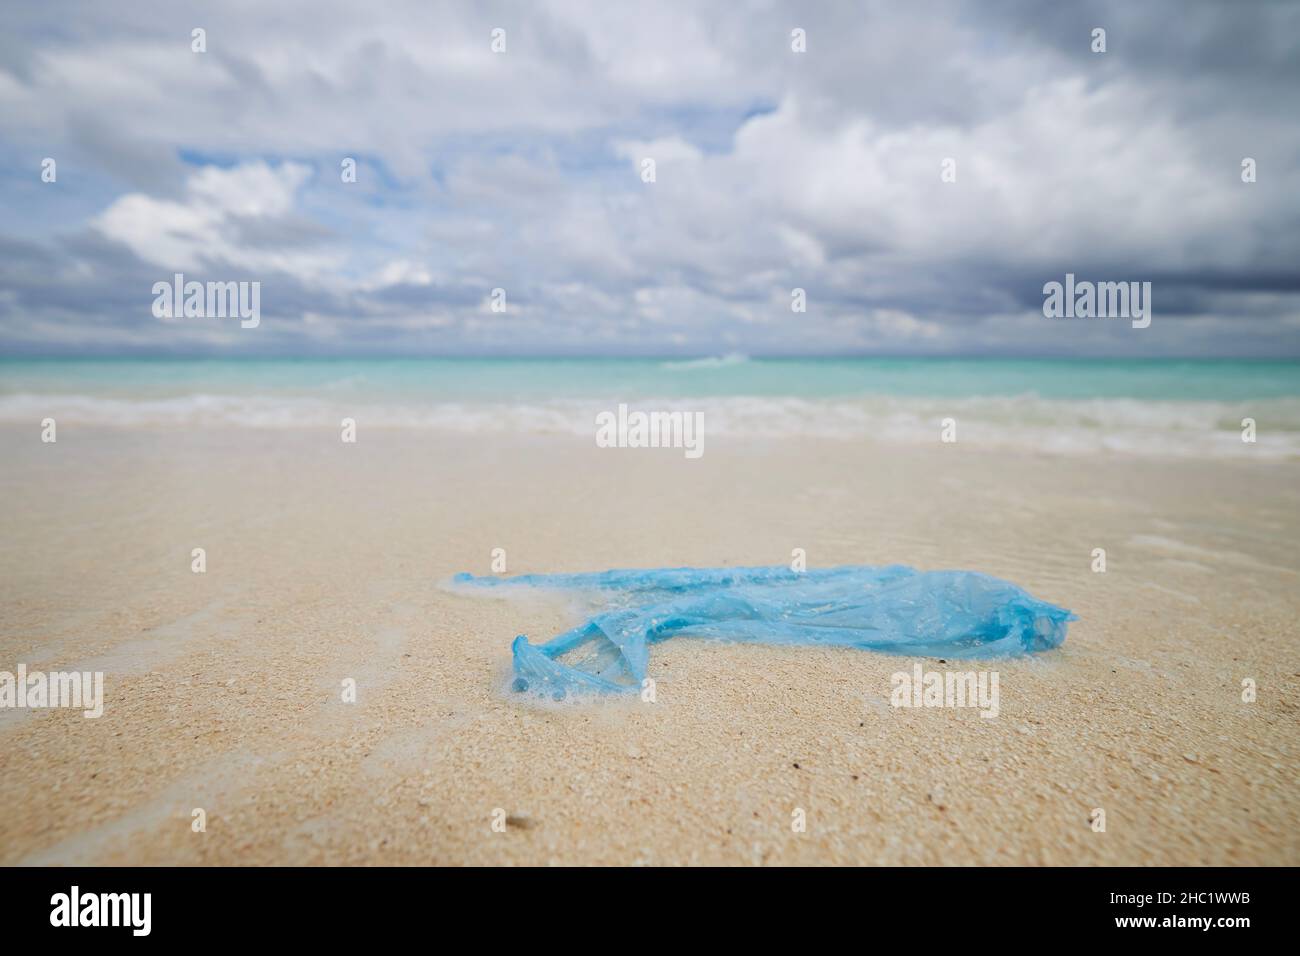 Sac en plastique abandonné sur plage de sable contre mer.Thèmes pollution des océans et questions environnementales. Banque D'Images